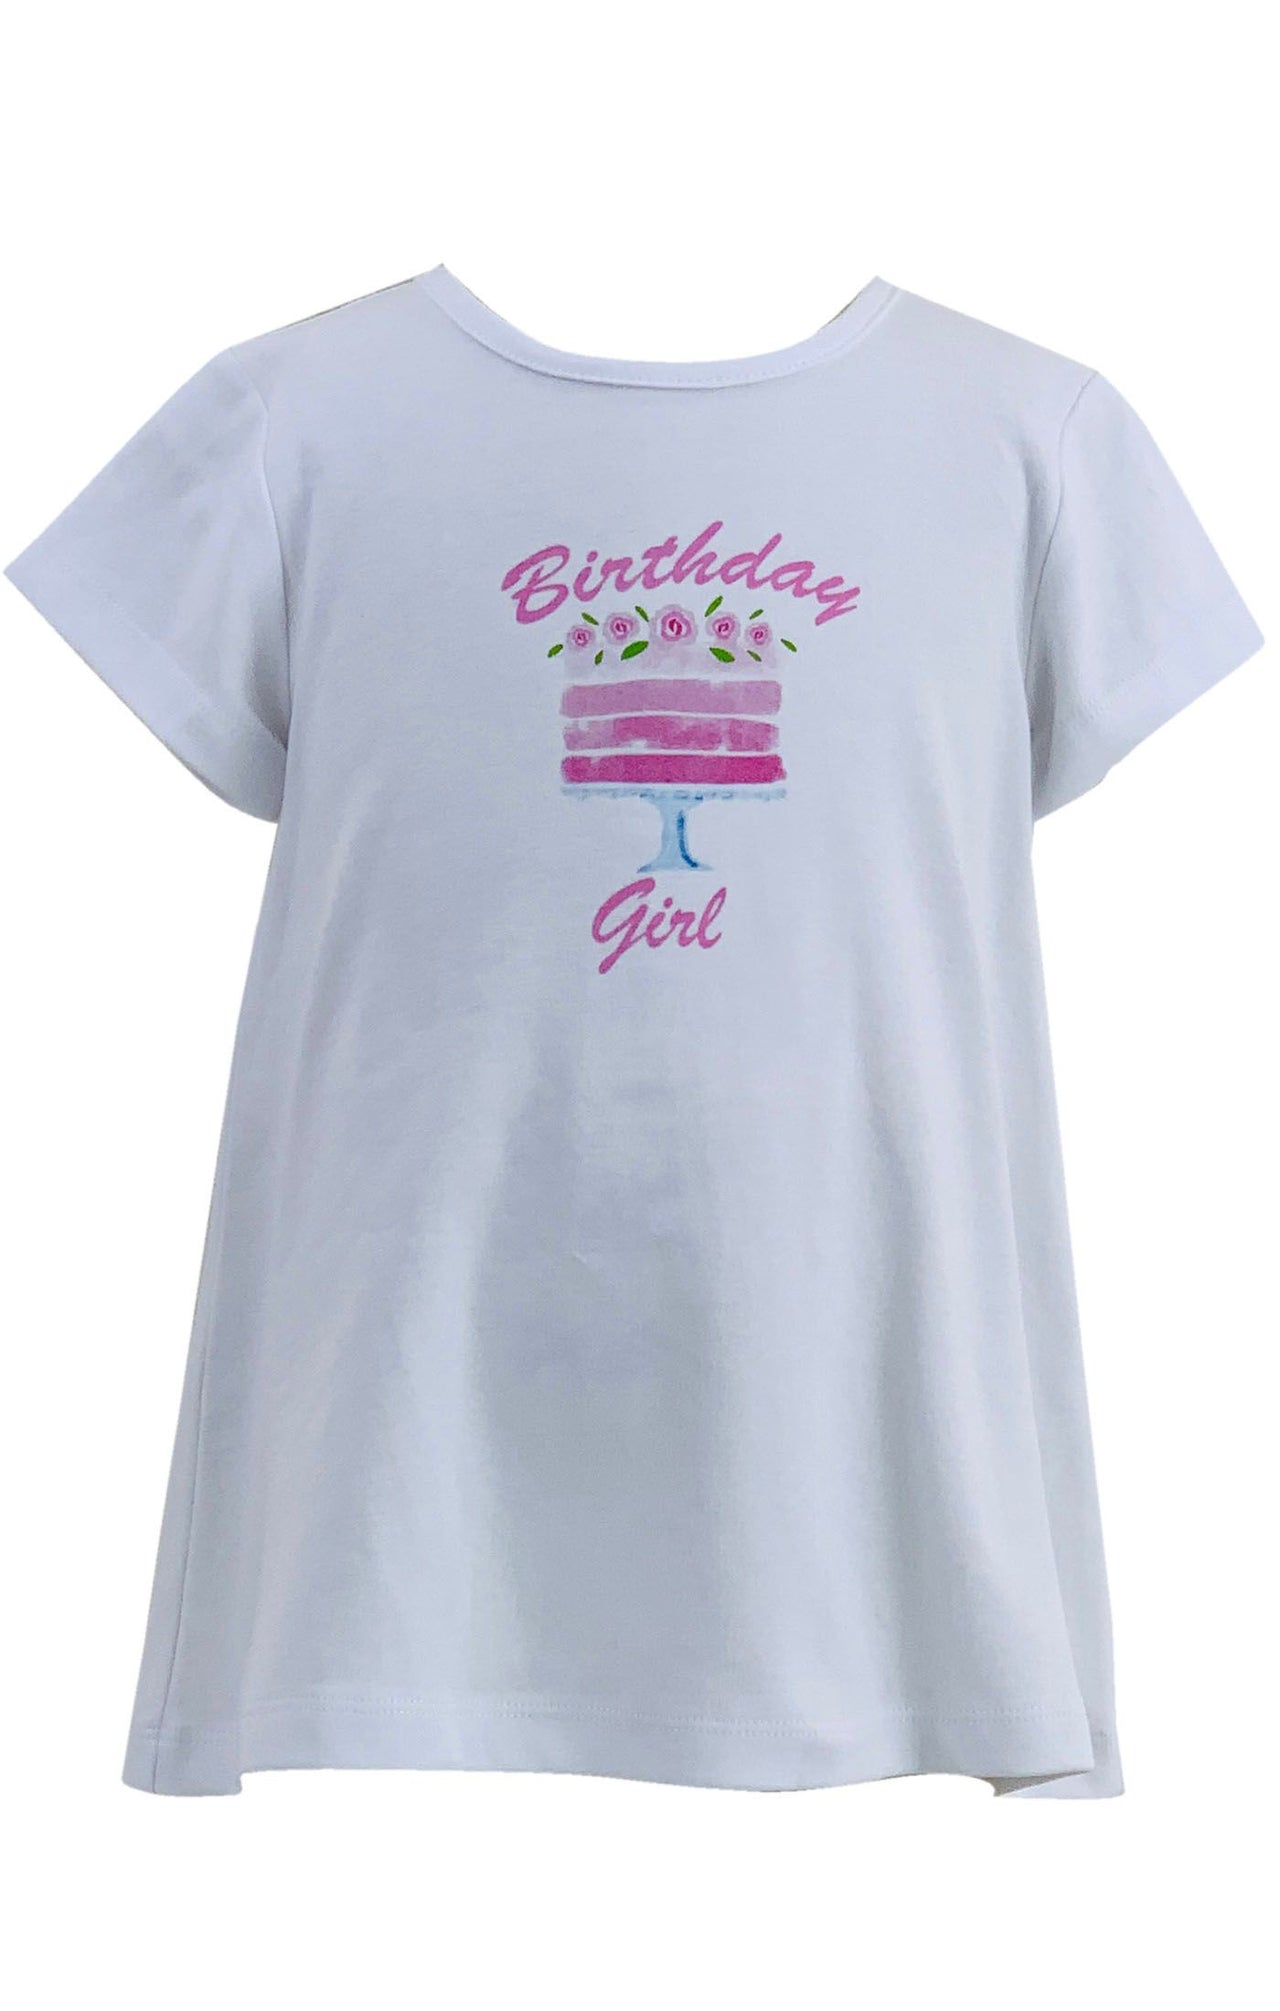 Ishtex Birthday Girl Graphic T-Shirt 2S076-BD305